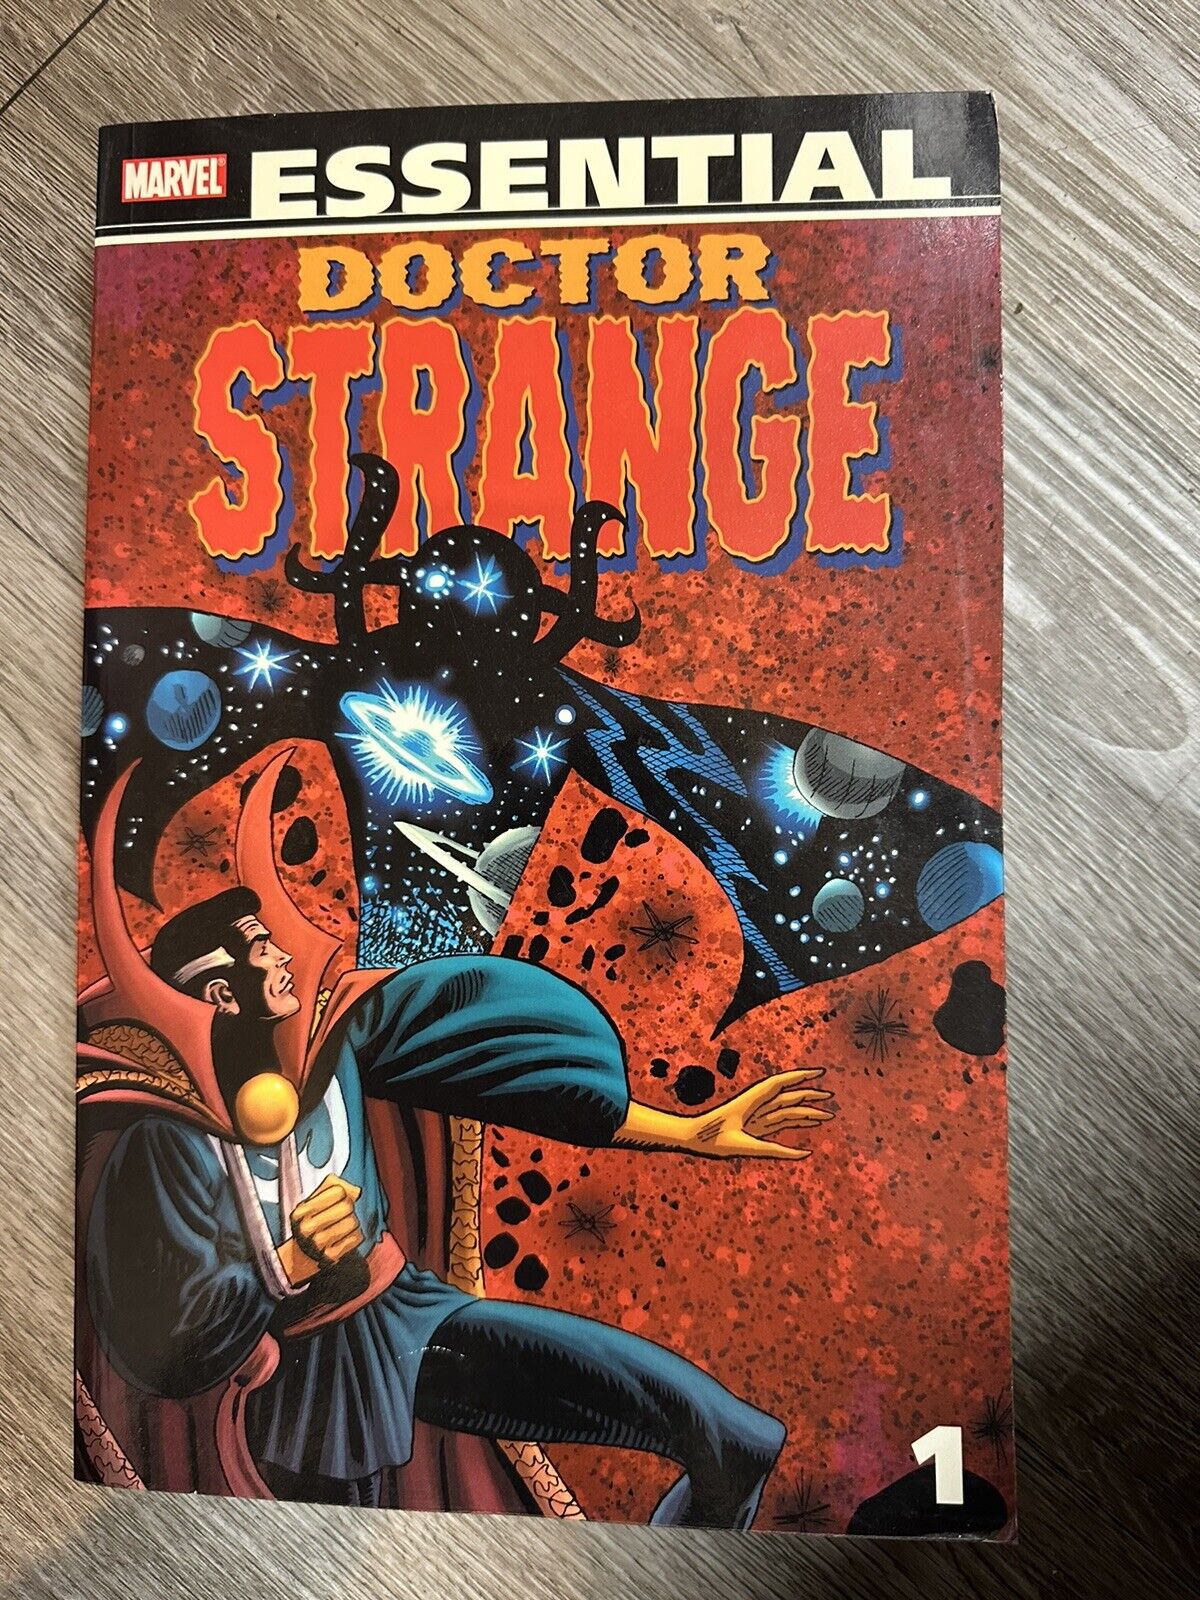 Essential Dr. Strange #1 (Marvel, May 2006)